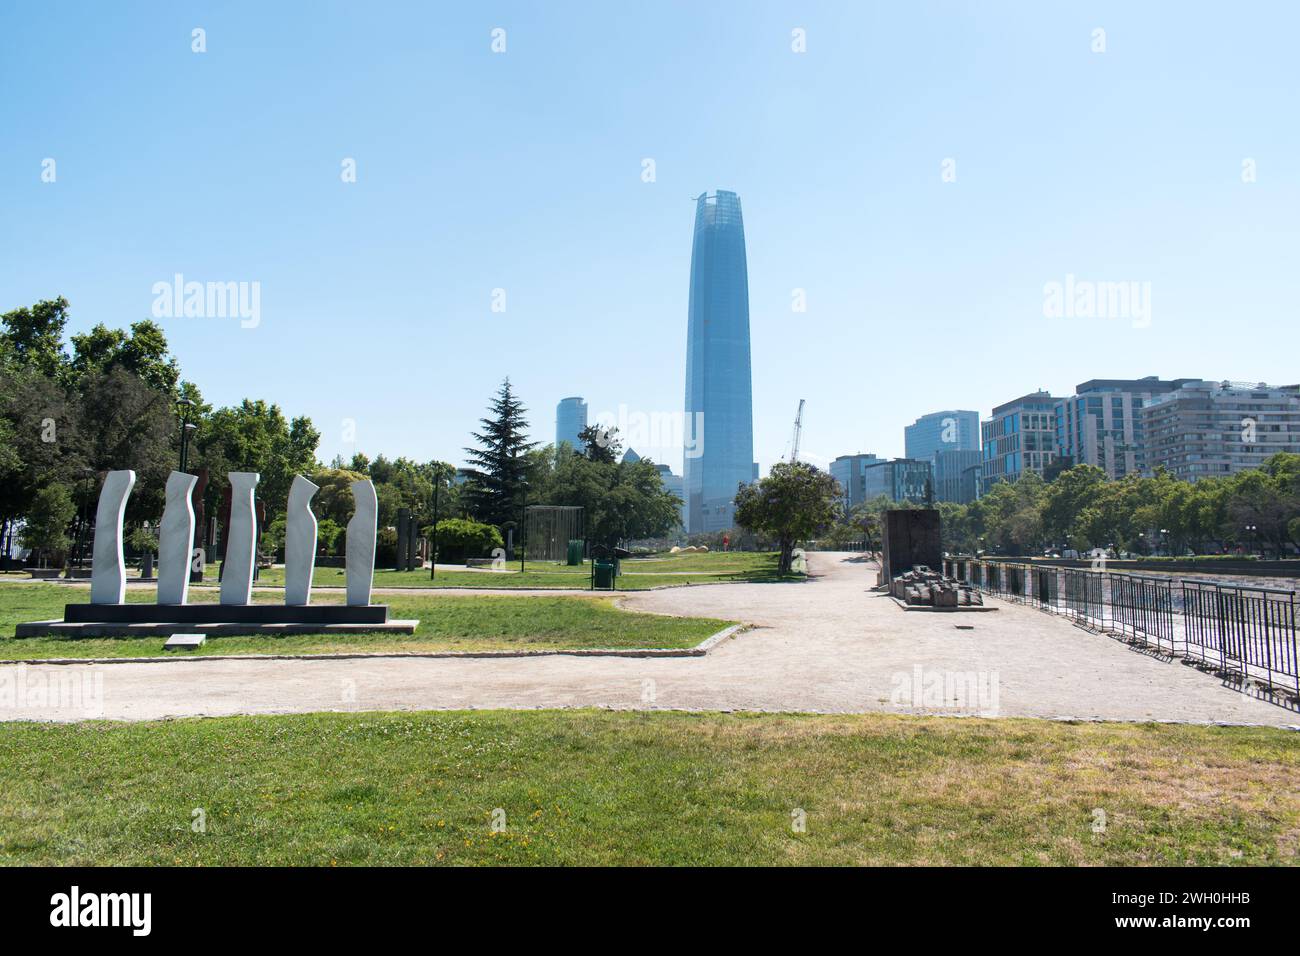 El Parque de las Esculturas in Santiago, Chile, ist ein bekannter Skulpturenpark im Freien, der eine vielfältige Sammlung zeitgenössischer Kunstwerke zeigt. Stockfoto